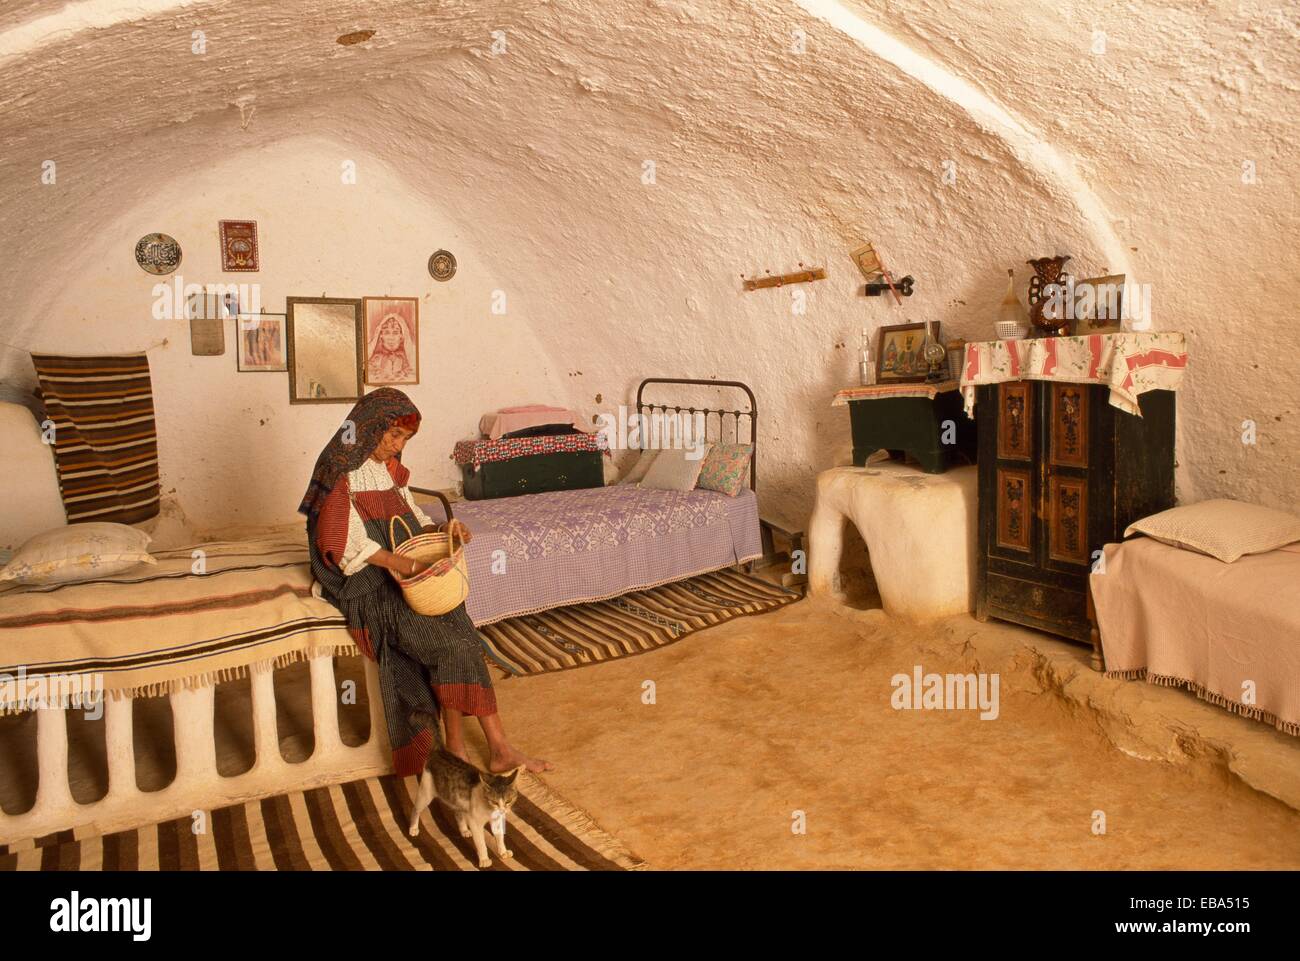 Fatima inside a cave house Matmata Southern Tunisia Stock Photo - Alamy